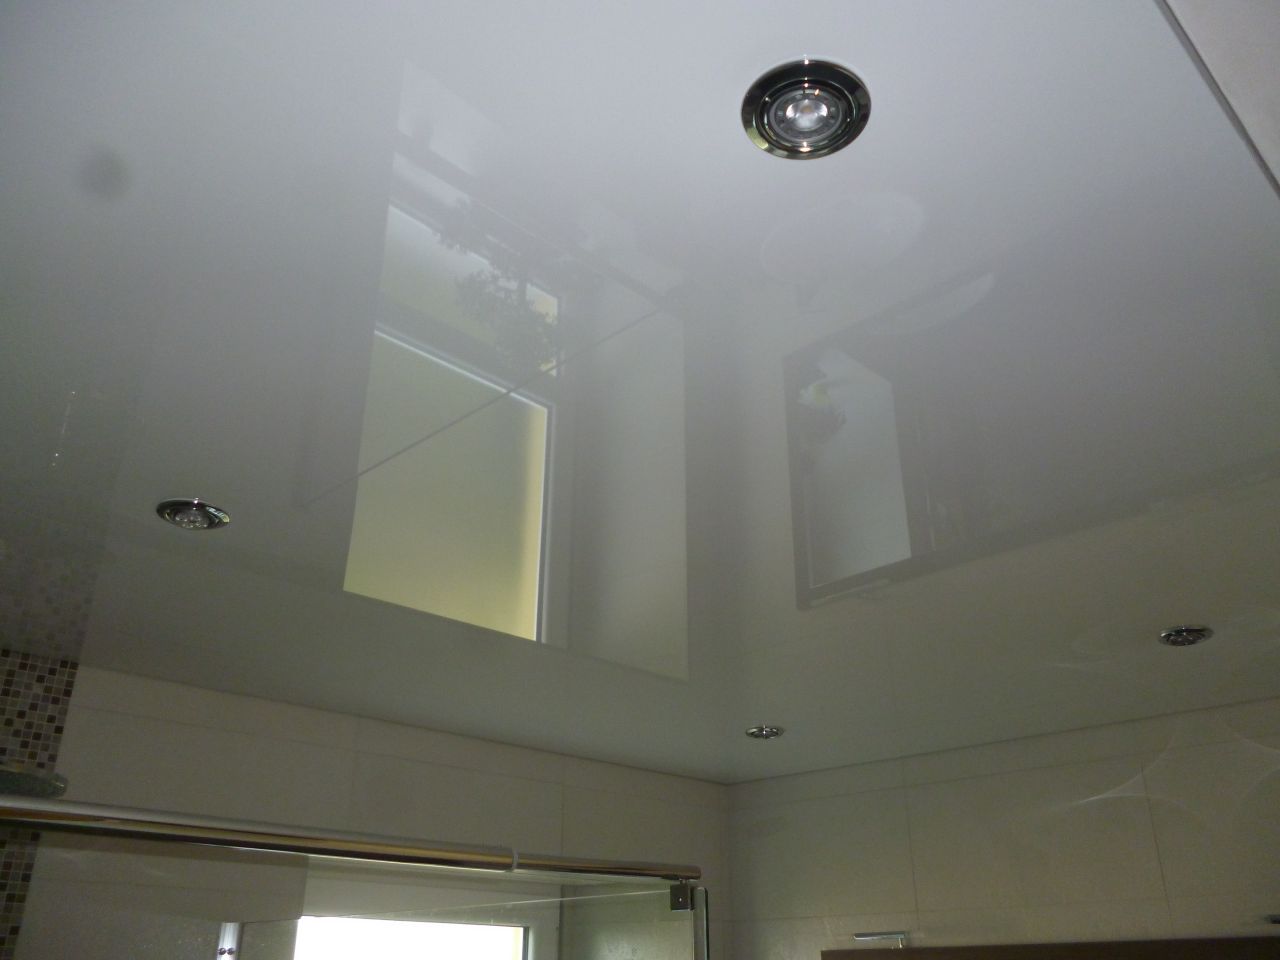 Rnovation salle de bains termine: vue du plafond tendu et spots